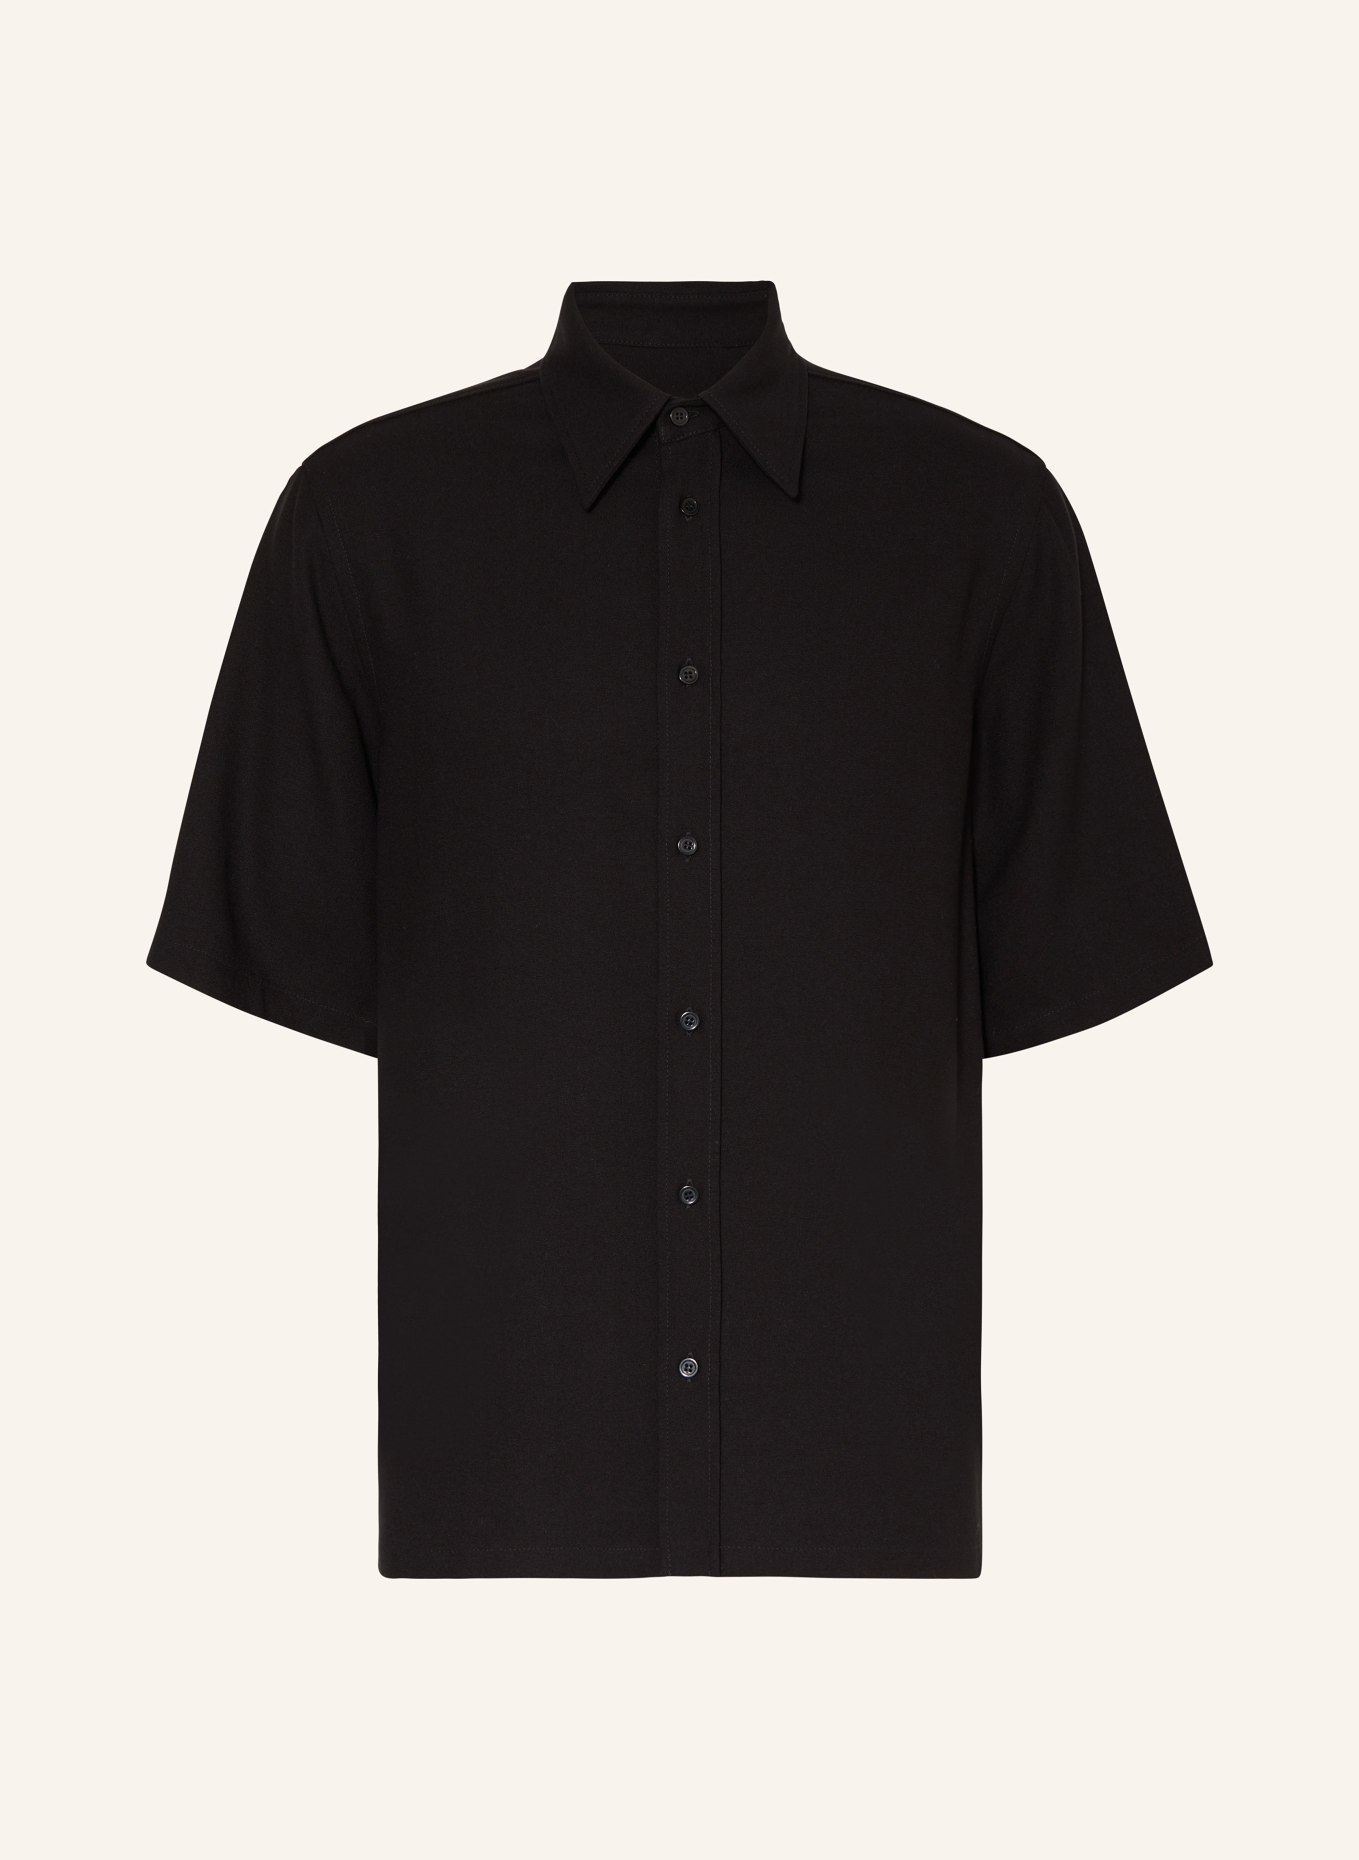 Filippa K Short sleeve shirt comfort fit made of jersey, Color: BLACK (Image 1)